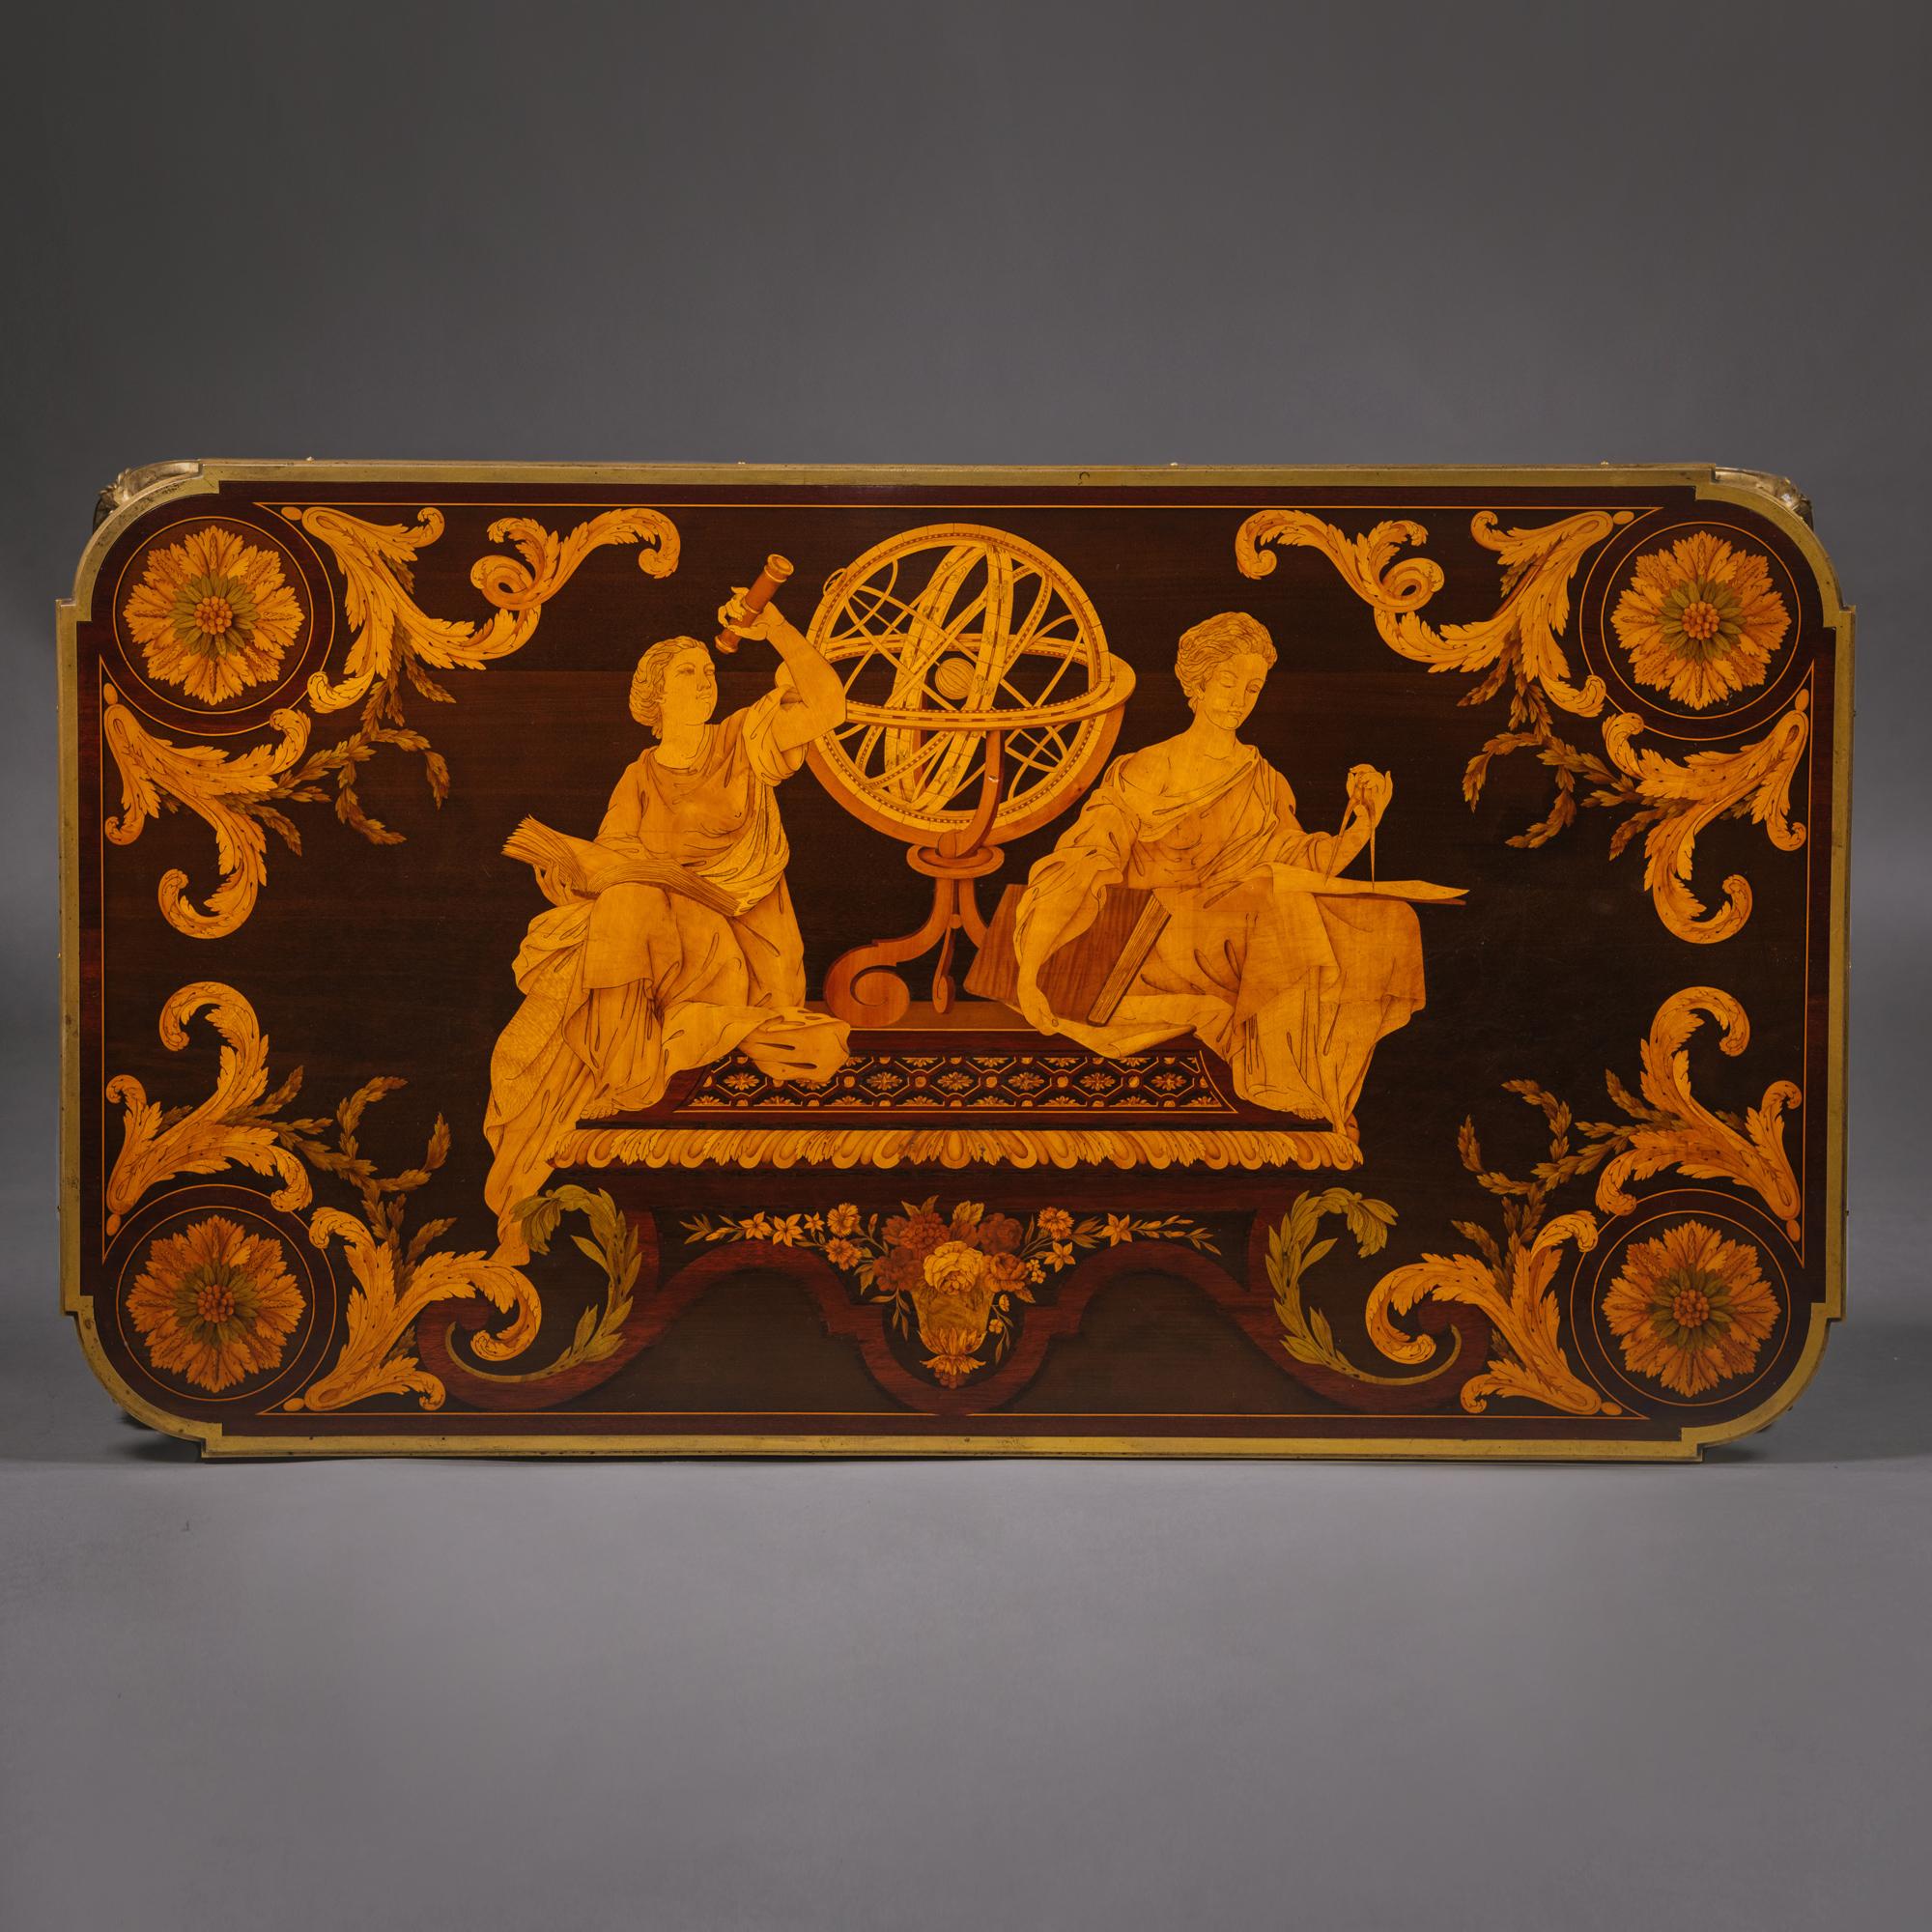 Table des Muses
Table de centre de style Louis XVI en marqueterie montée en bronze doré 
Par Emmanuel-Alfred (Dit Alfred II) Beurdeley, d'après le modèle de Jean-Henri Riesener.

 Estampillé 